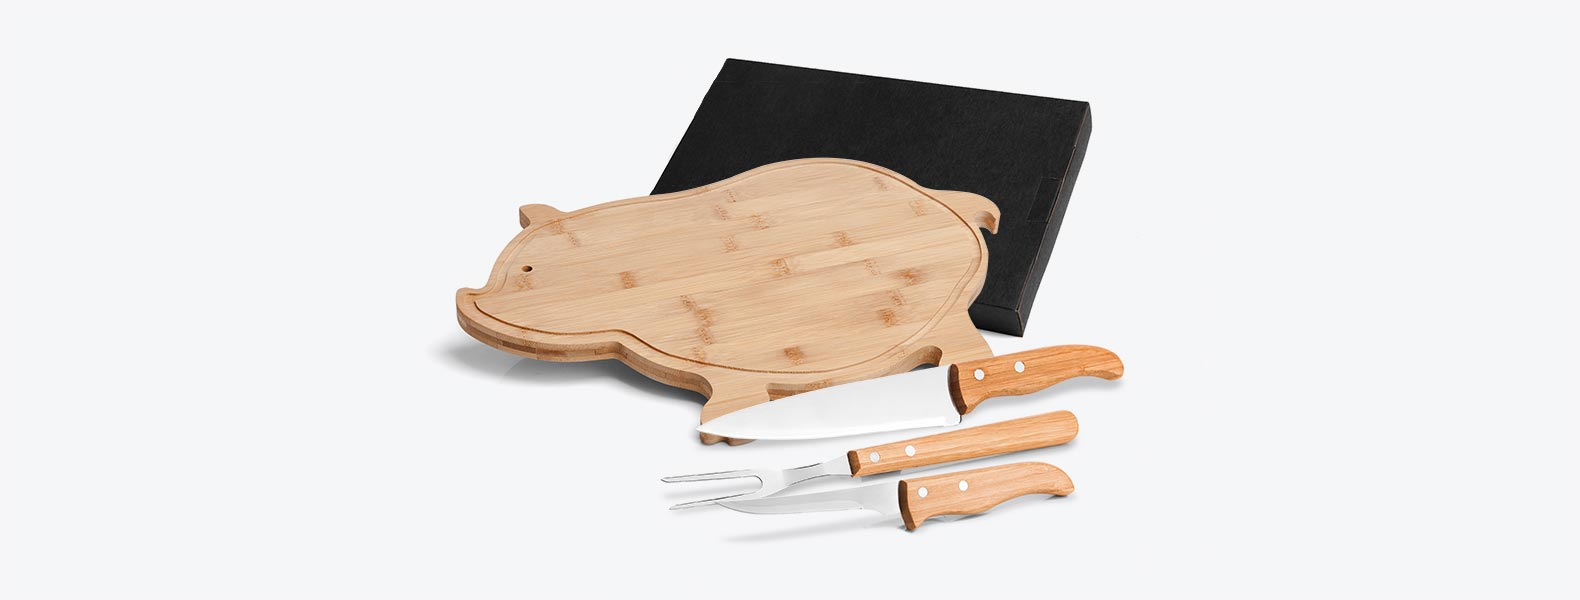 Kit para Cozinha em Bambu/Aço Inox com tábua em formato de porco, garfo, faca 5 e faca 7'' em Bambu/Inox. Tábua confeccionada com tripla camada invertida, para dar maior durabilidade e não deformar com o passar do tempo.